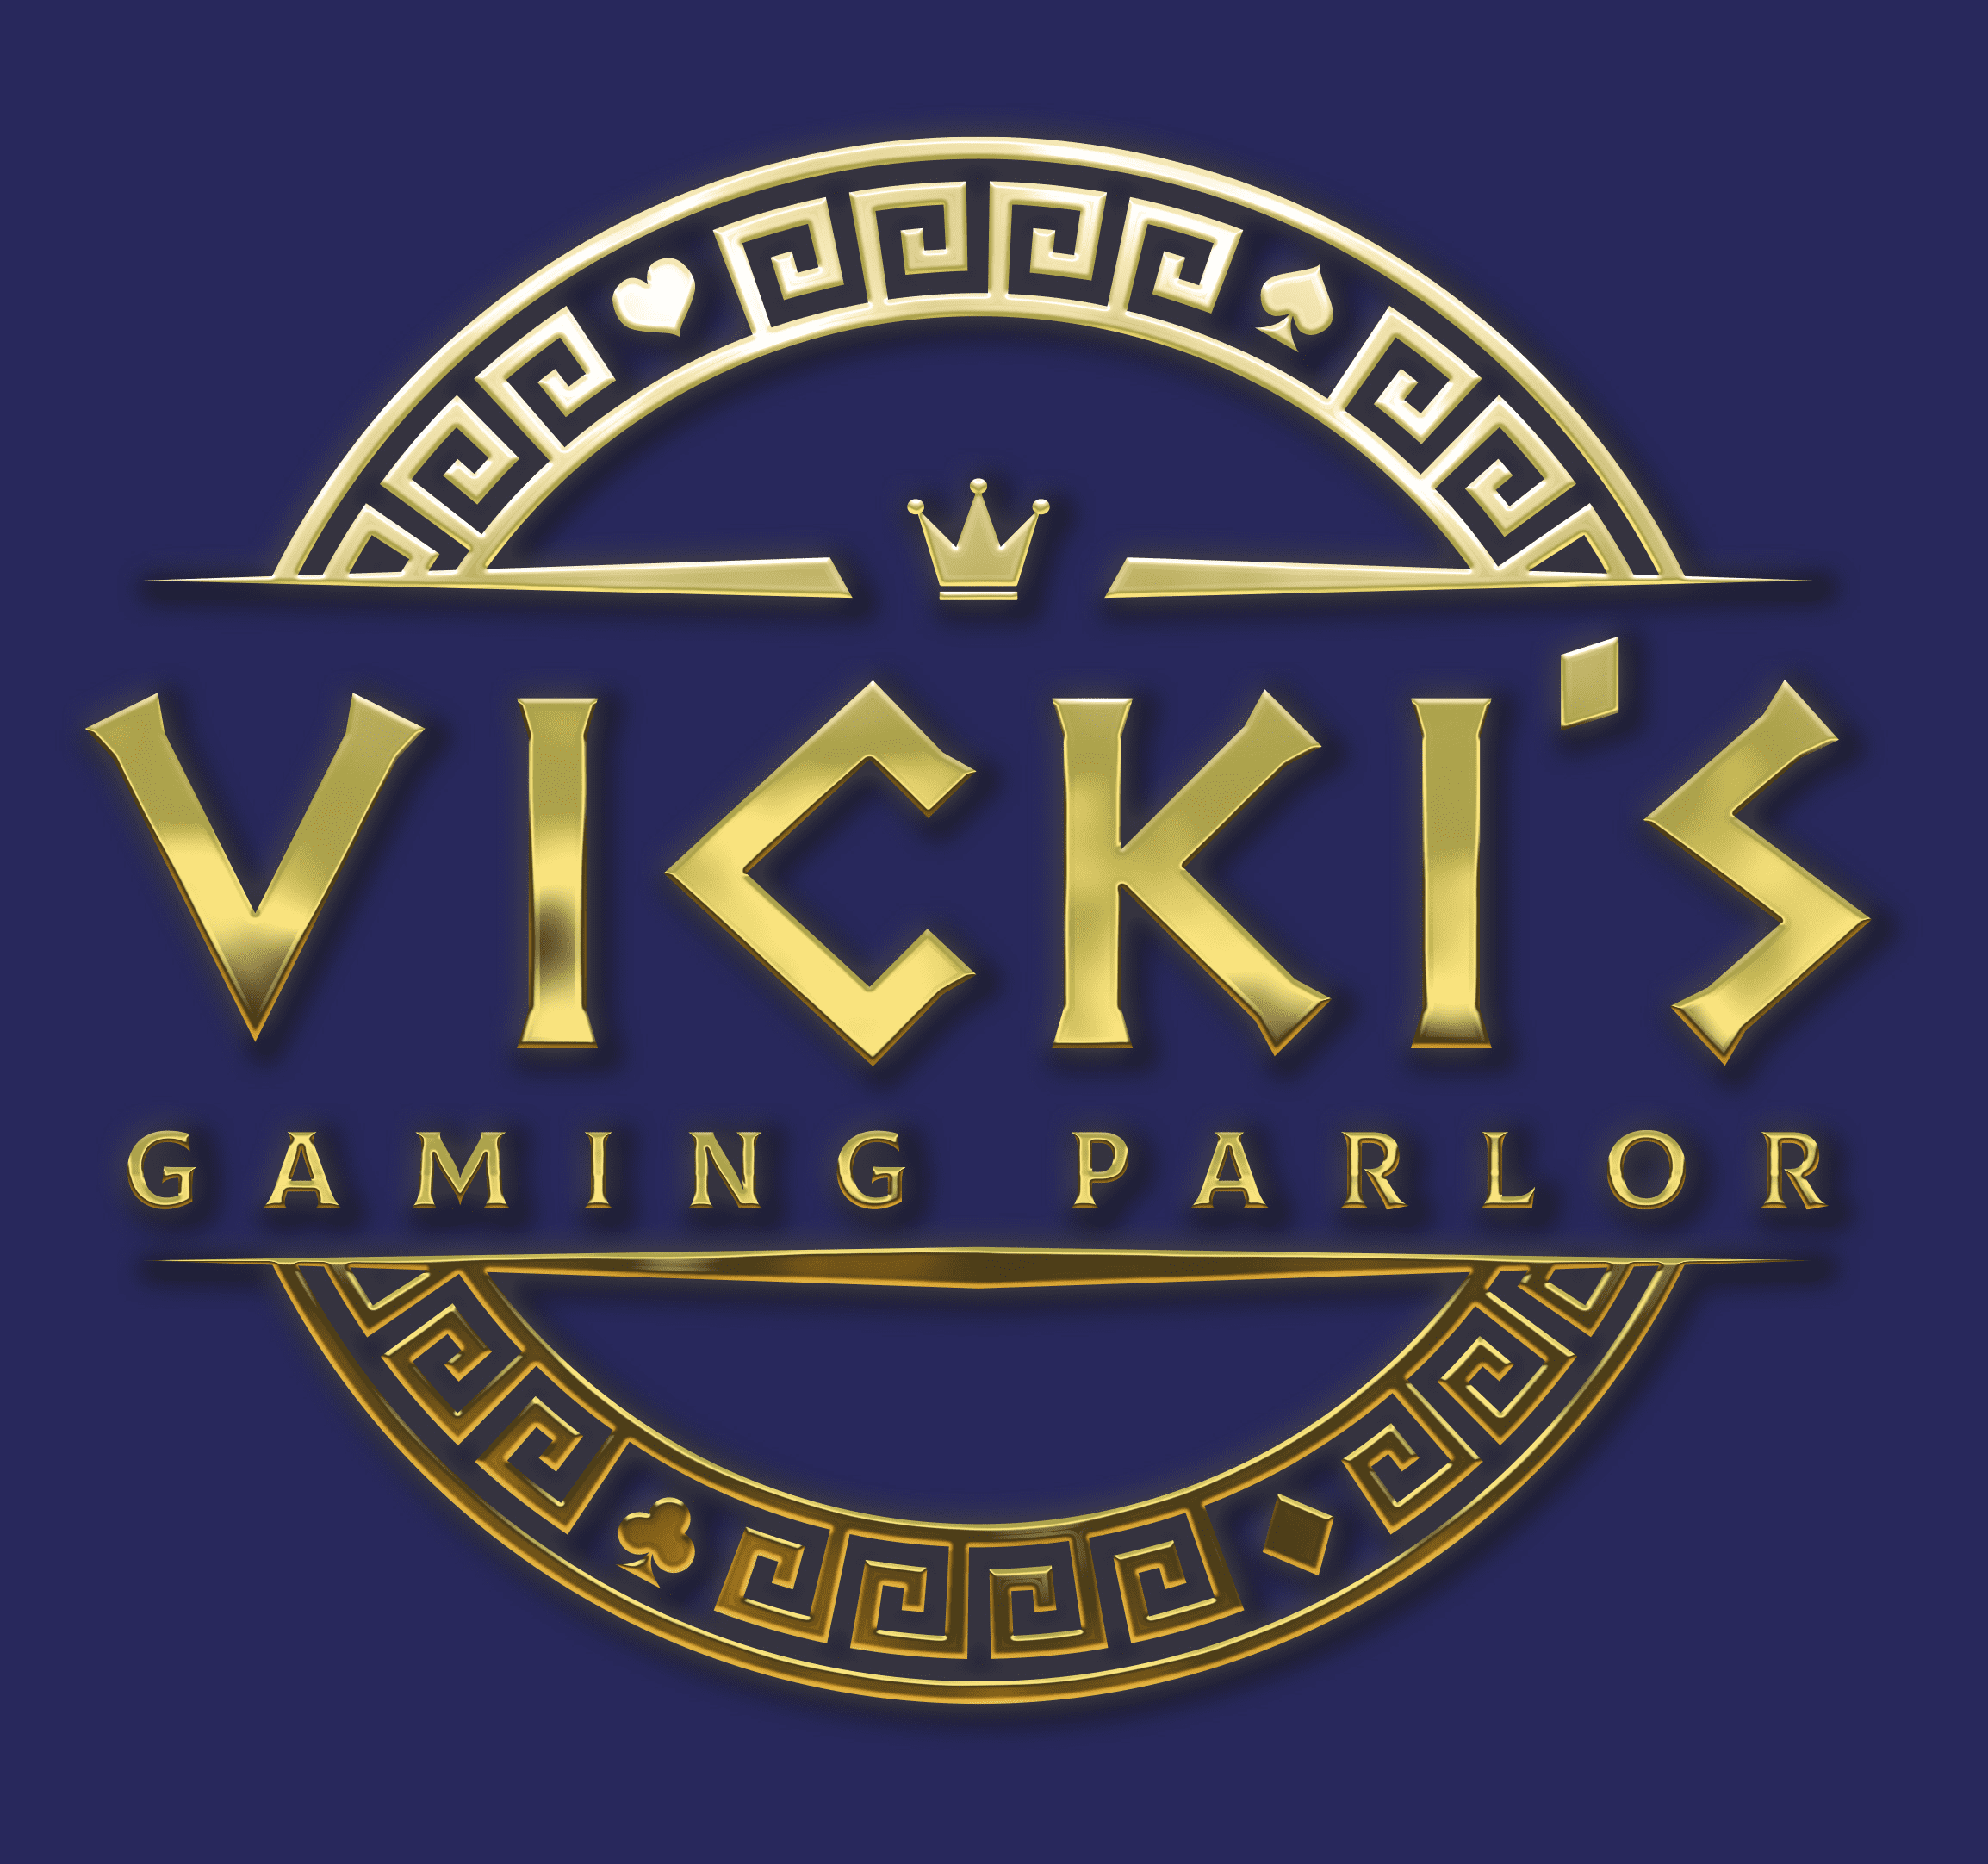 VICKI’S GAMING PARLOR